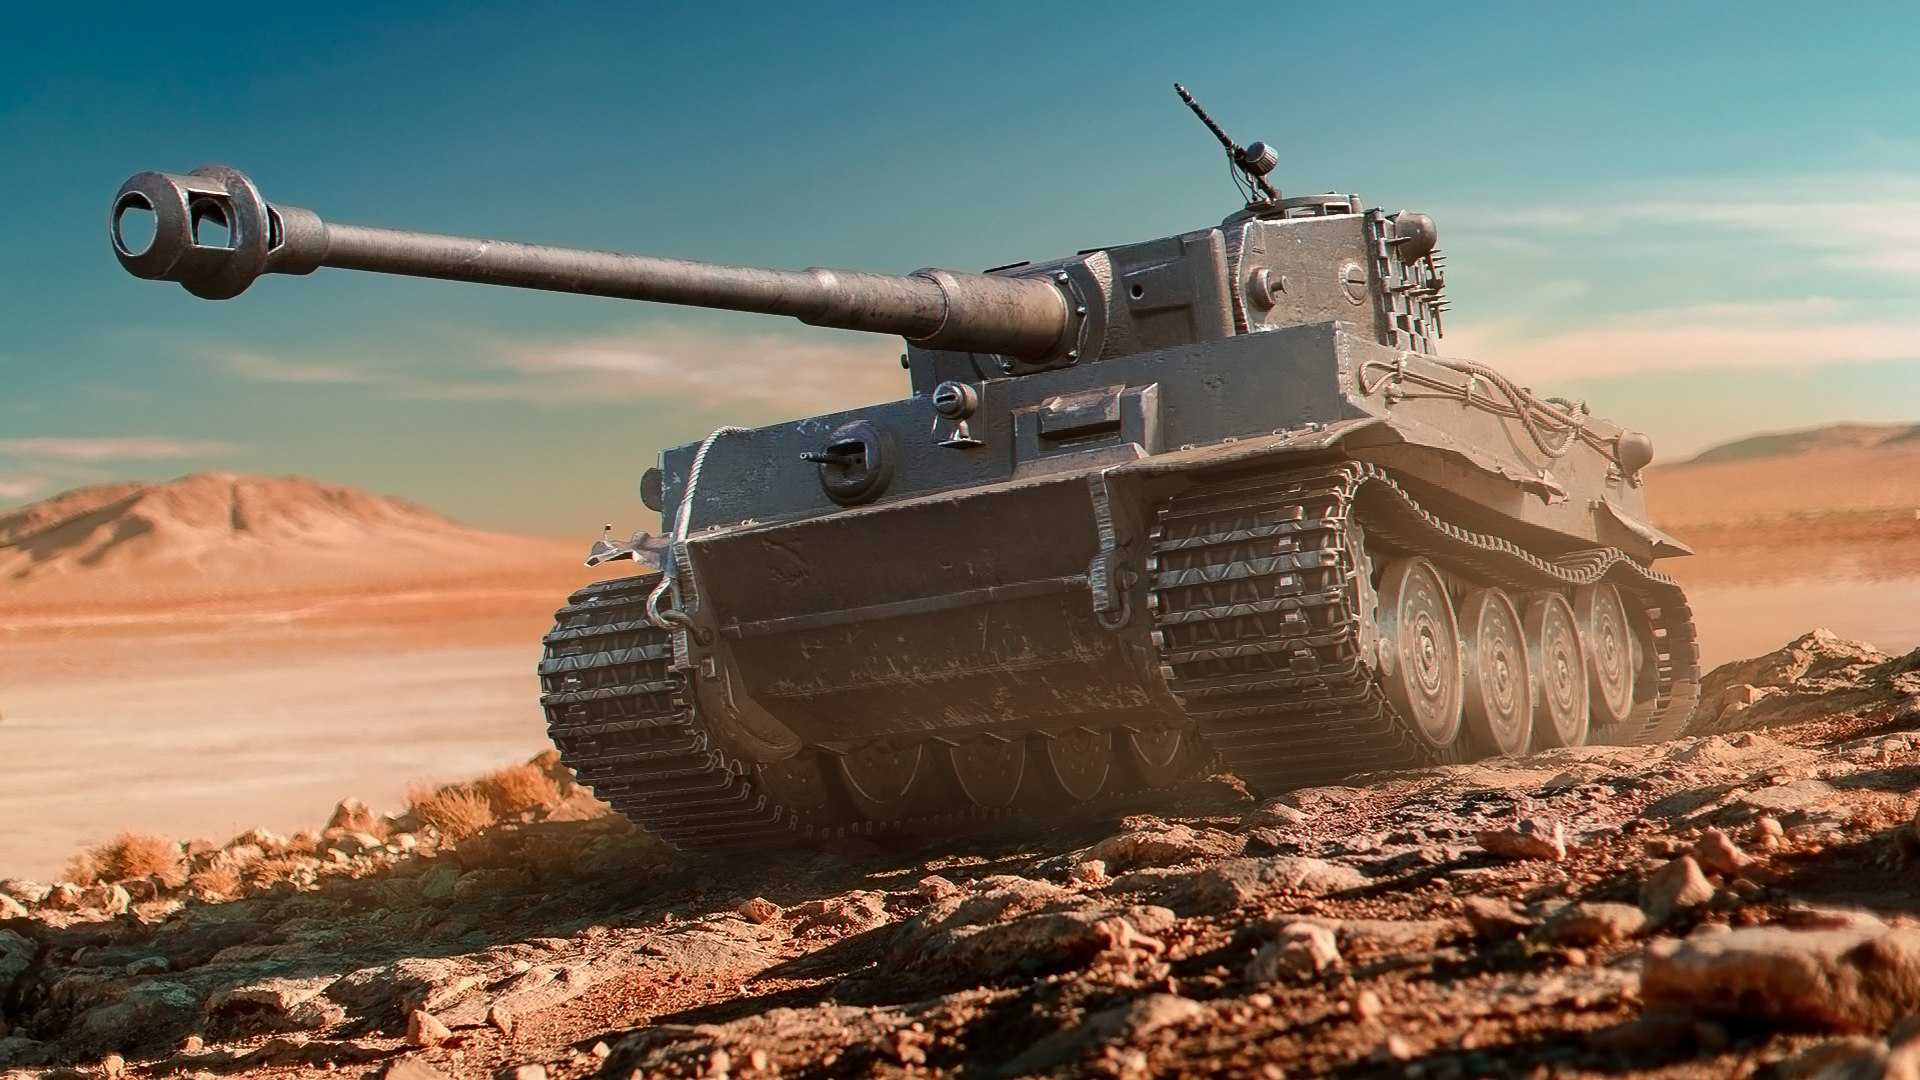 Обзор world of tanks образца 2021 года. как изменилась игра за годы с релиза и почему стоит начать играть, если всё еще не